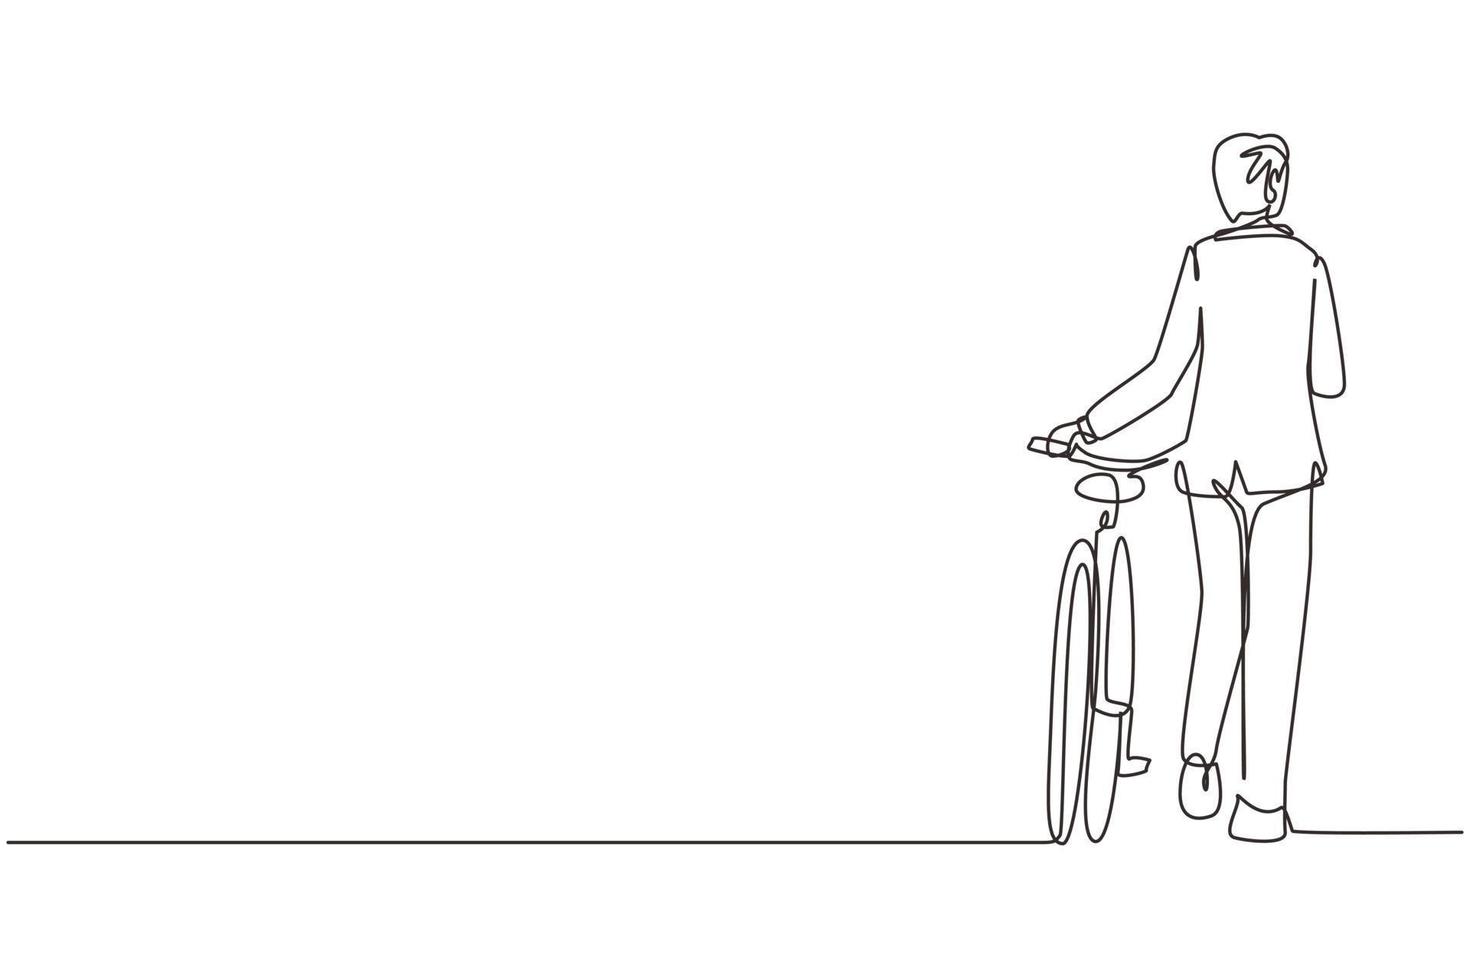 disegno a linea continua singola vista posteriore a piedi giovane maschio che indossa una tuta con la bicicletta. l'uomo fa una passeggiata con la bicicletta sulla strada della città. stile di vita sano delle persone urbane. vettore di disegno grafico a una linea